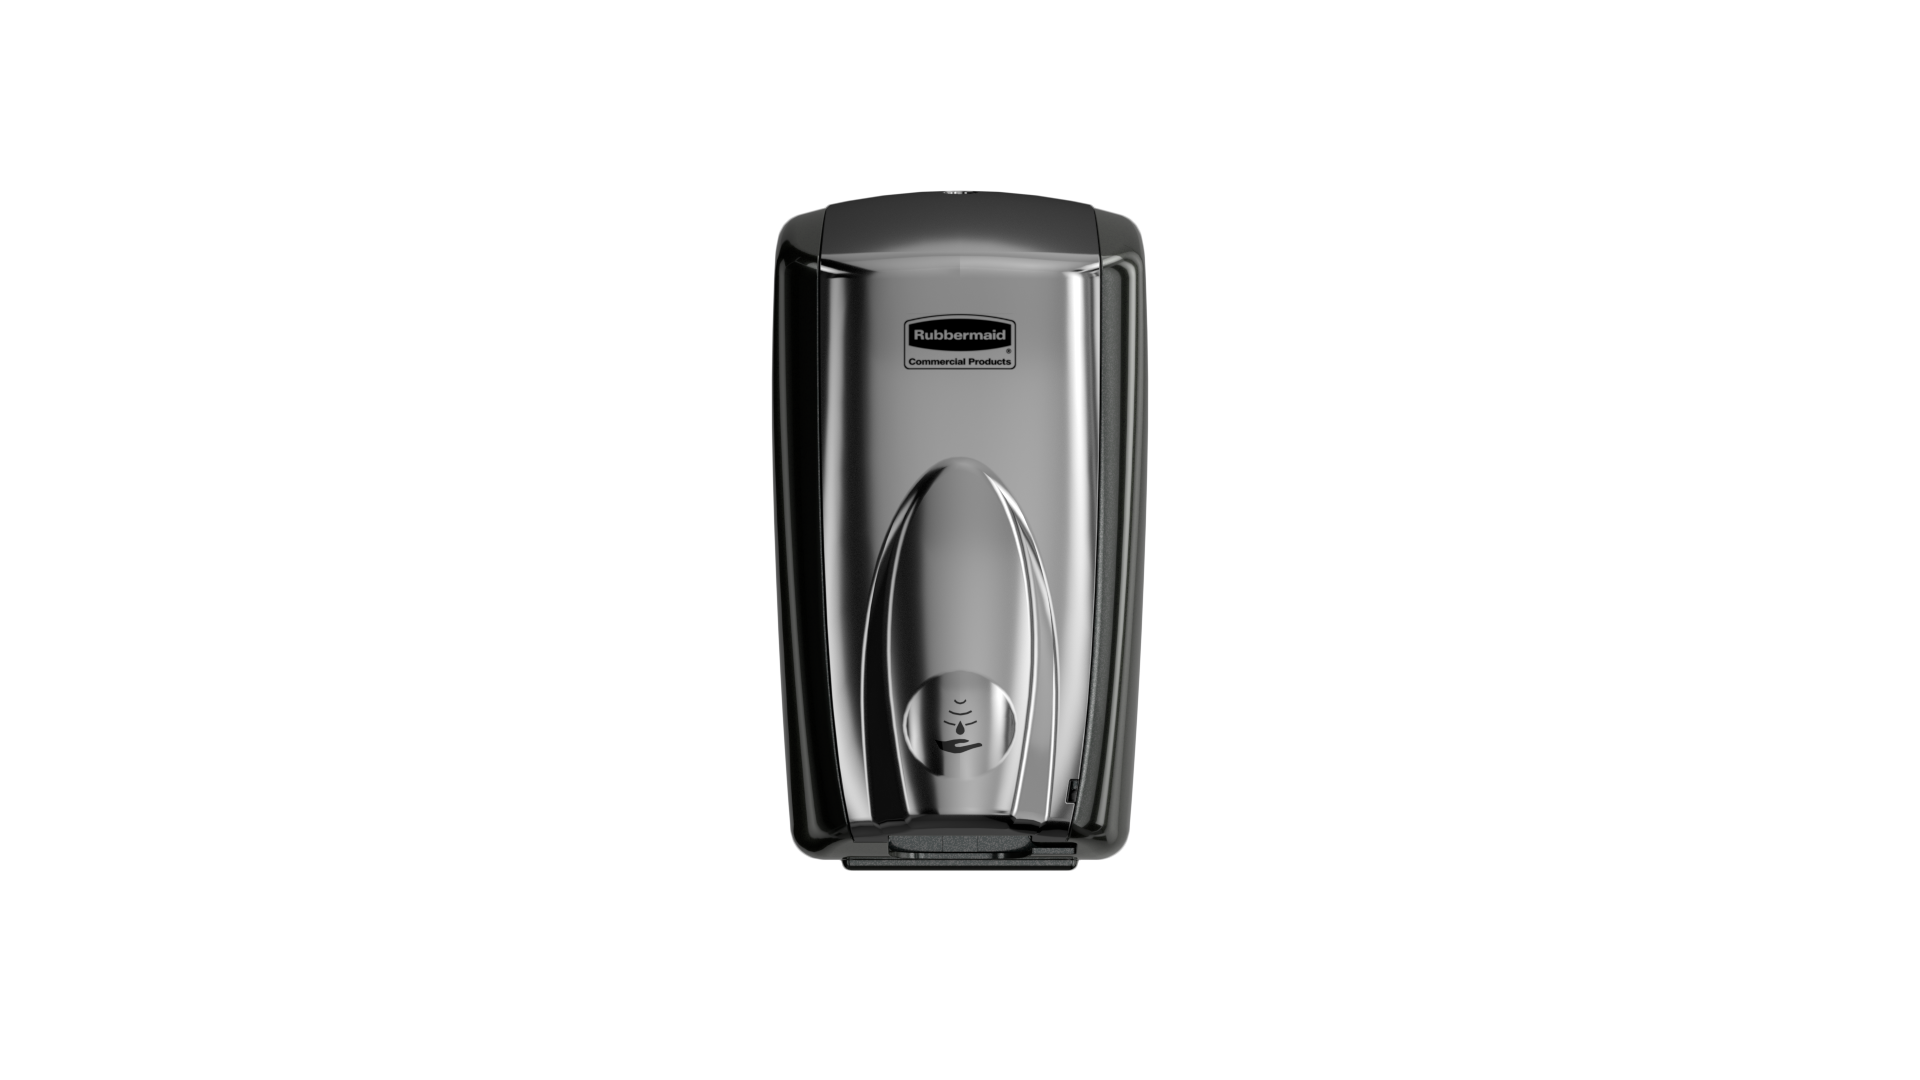 Rubbermaid Commercial Autofoam Automatic Hand Soap Foam FG750411 Black/Chrome 